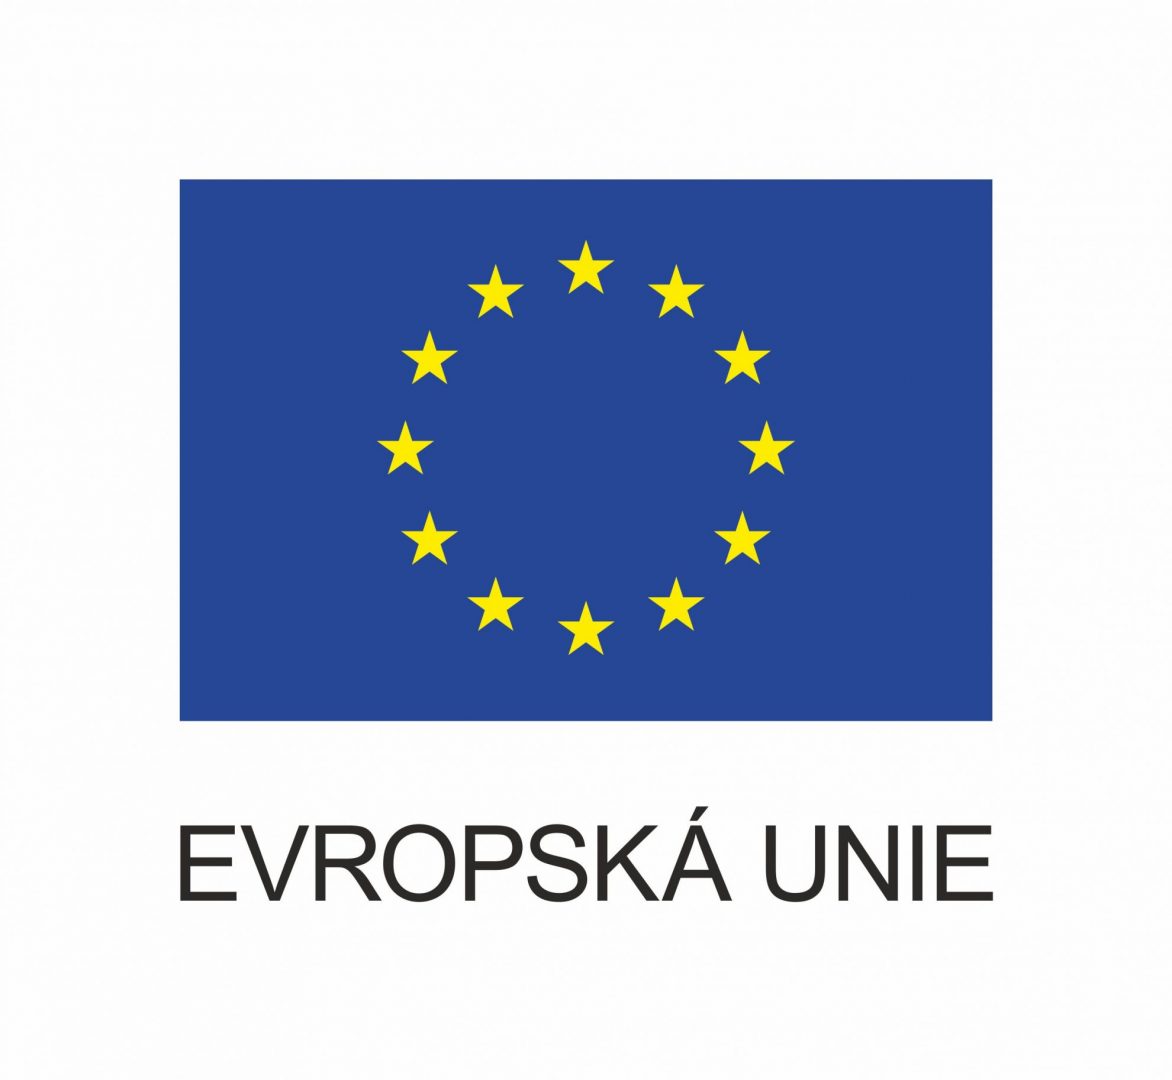 Vlajka Evropské unie, která se skládá z kruhu dvanácti zlatých hvězd na modrém pozadí. Text pod vlajkou je "EVROPSKÁ UNIE" v černých velkých písmenech.